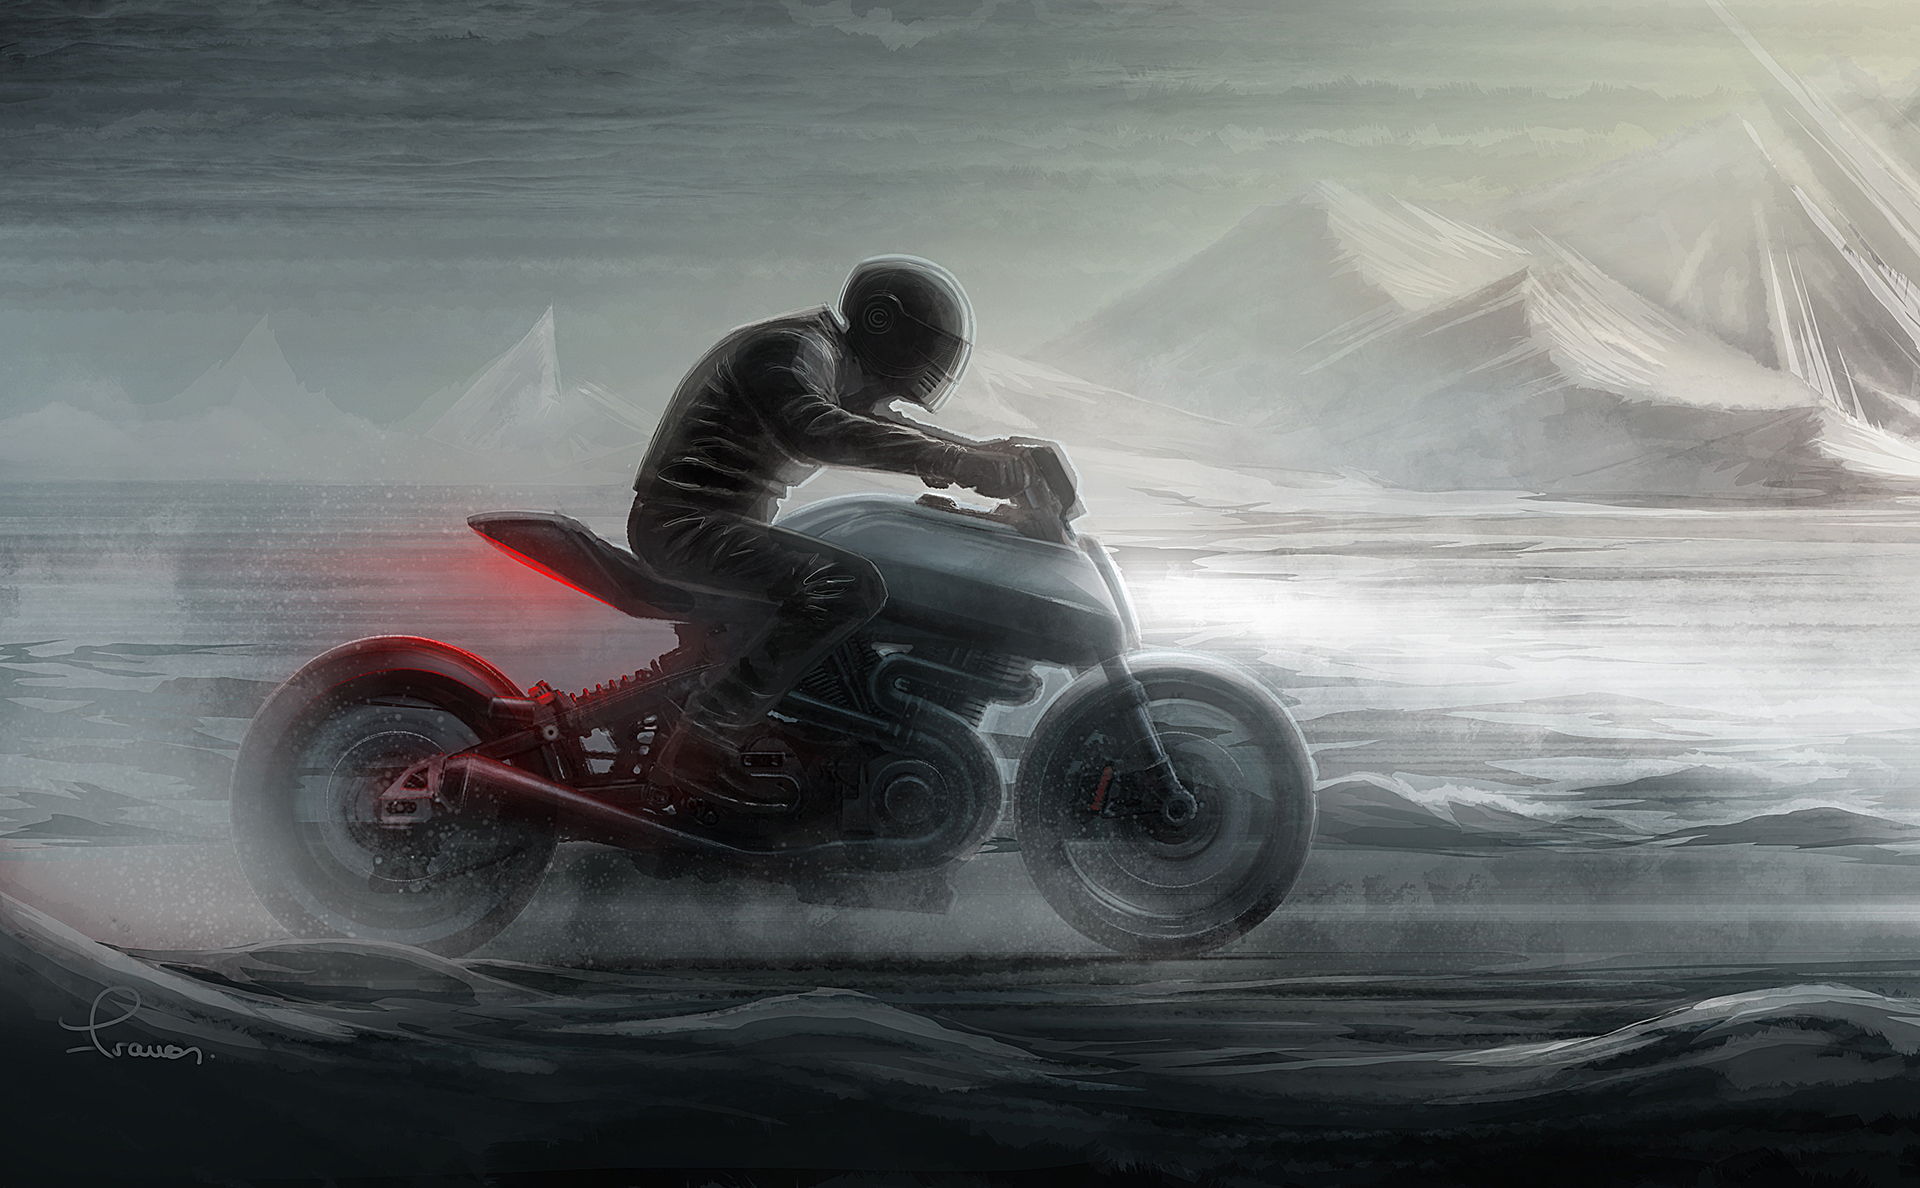 男人的大玩具——black coffee 摩托车,骑它去兜风绝对霸气拉风